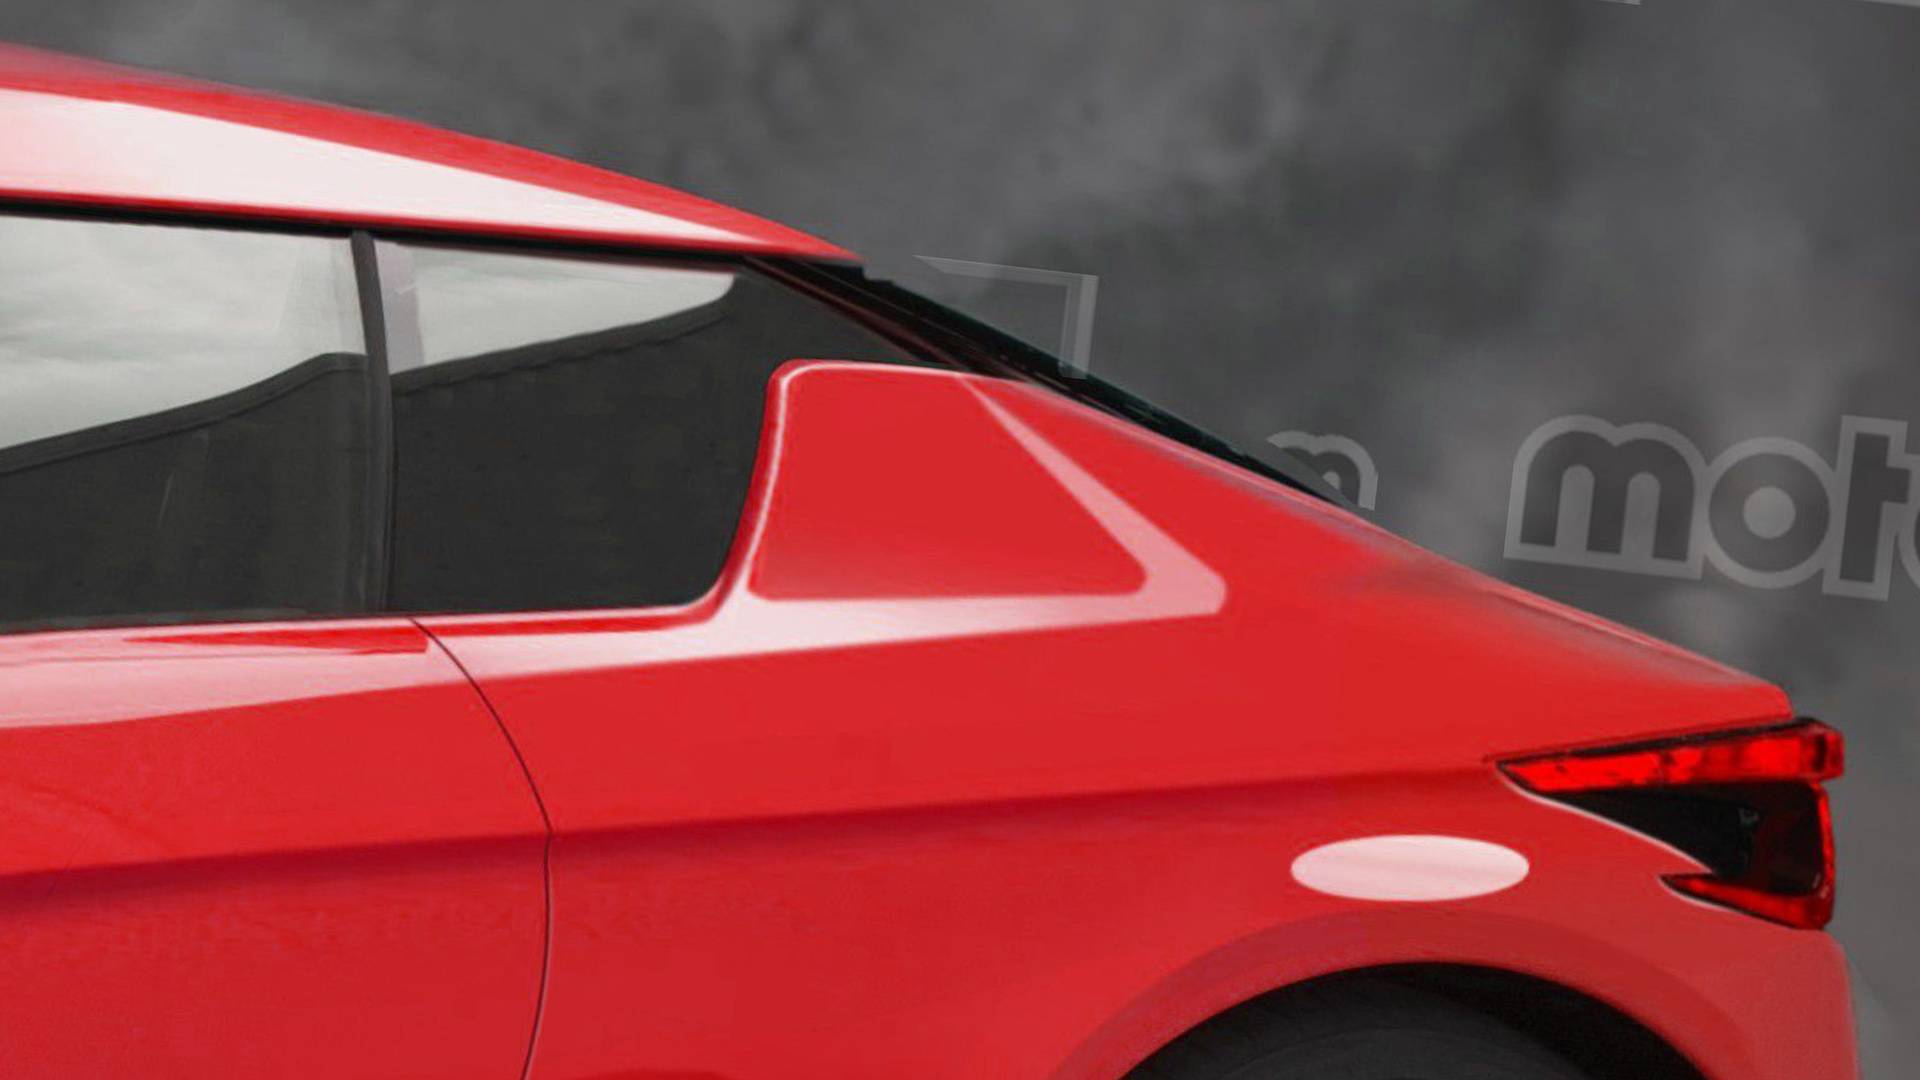 نيسان 370Z القادمة 2020 تظهر بتصميم جديد كليا في صور افتراضية 5